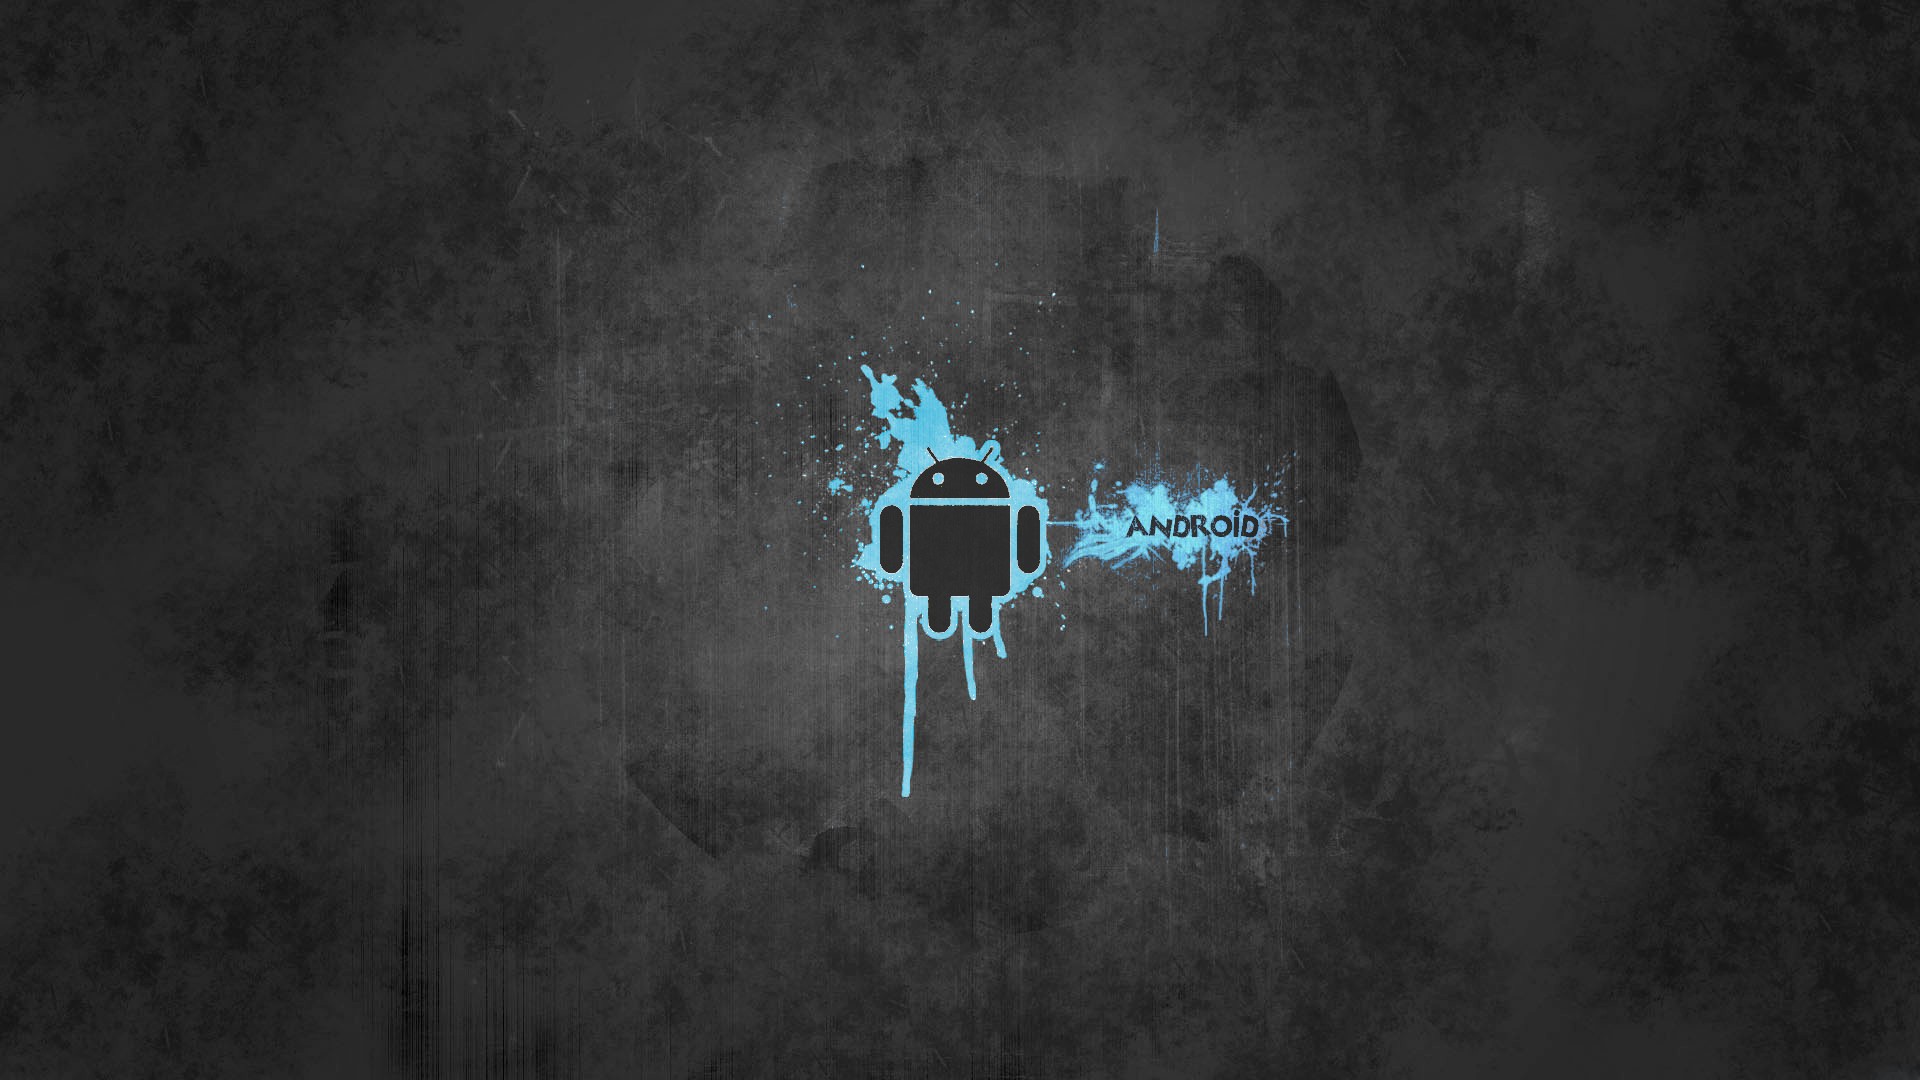 Android Background Size Amazing Background